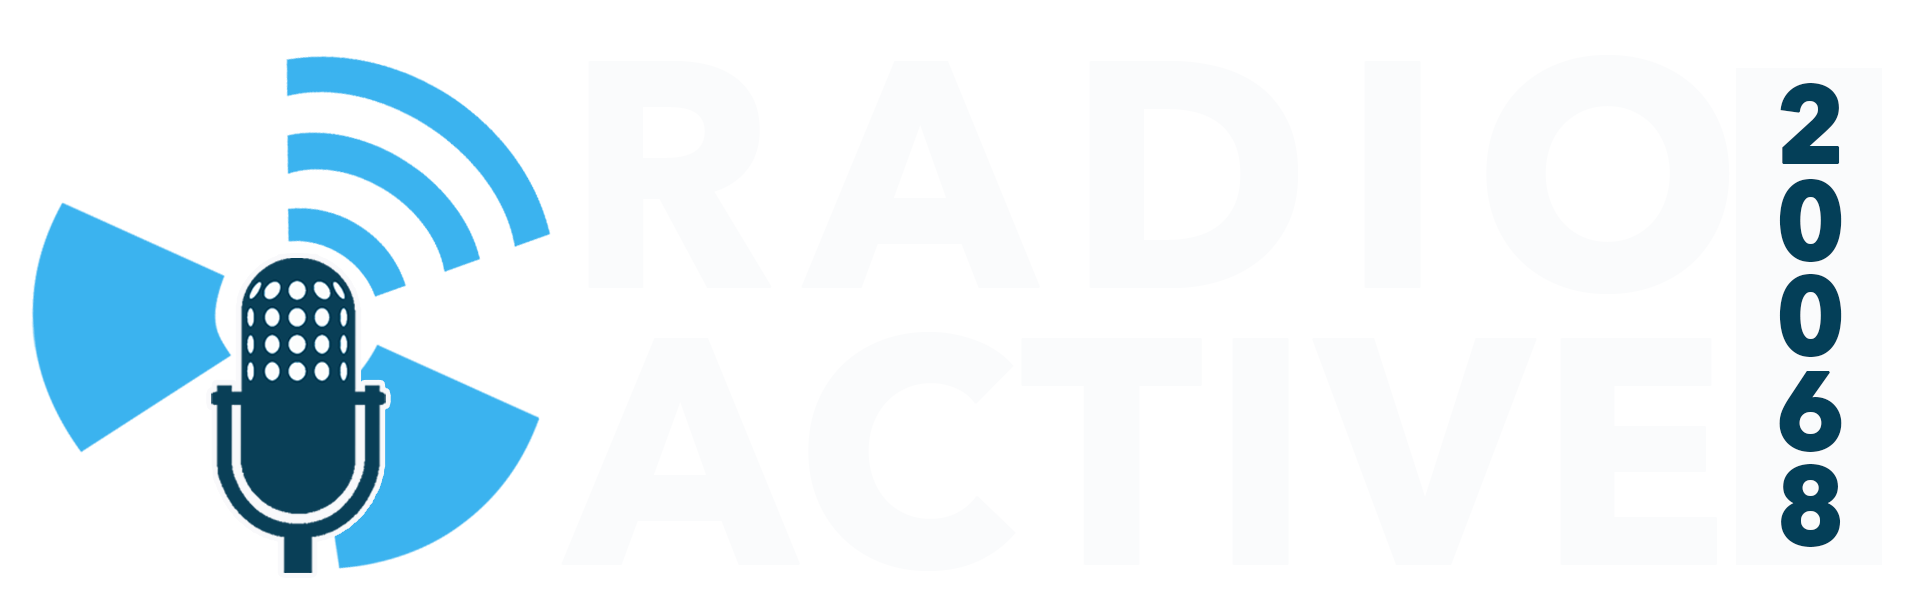 Radio Active 20068